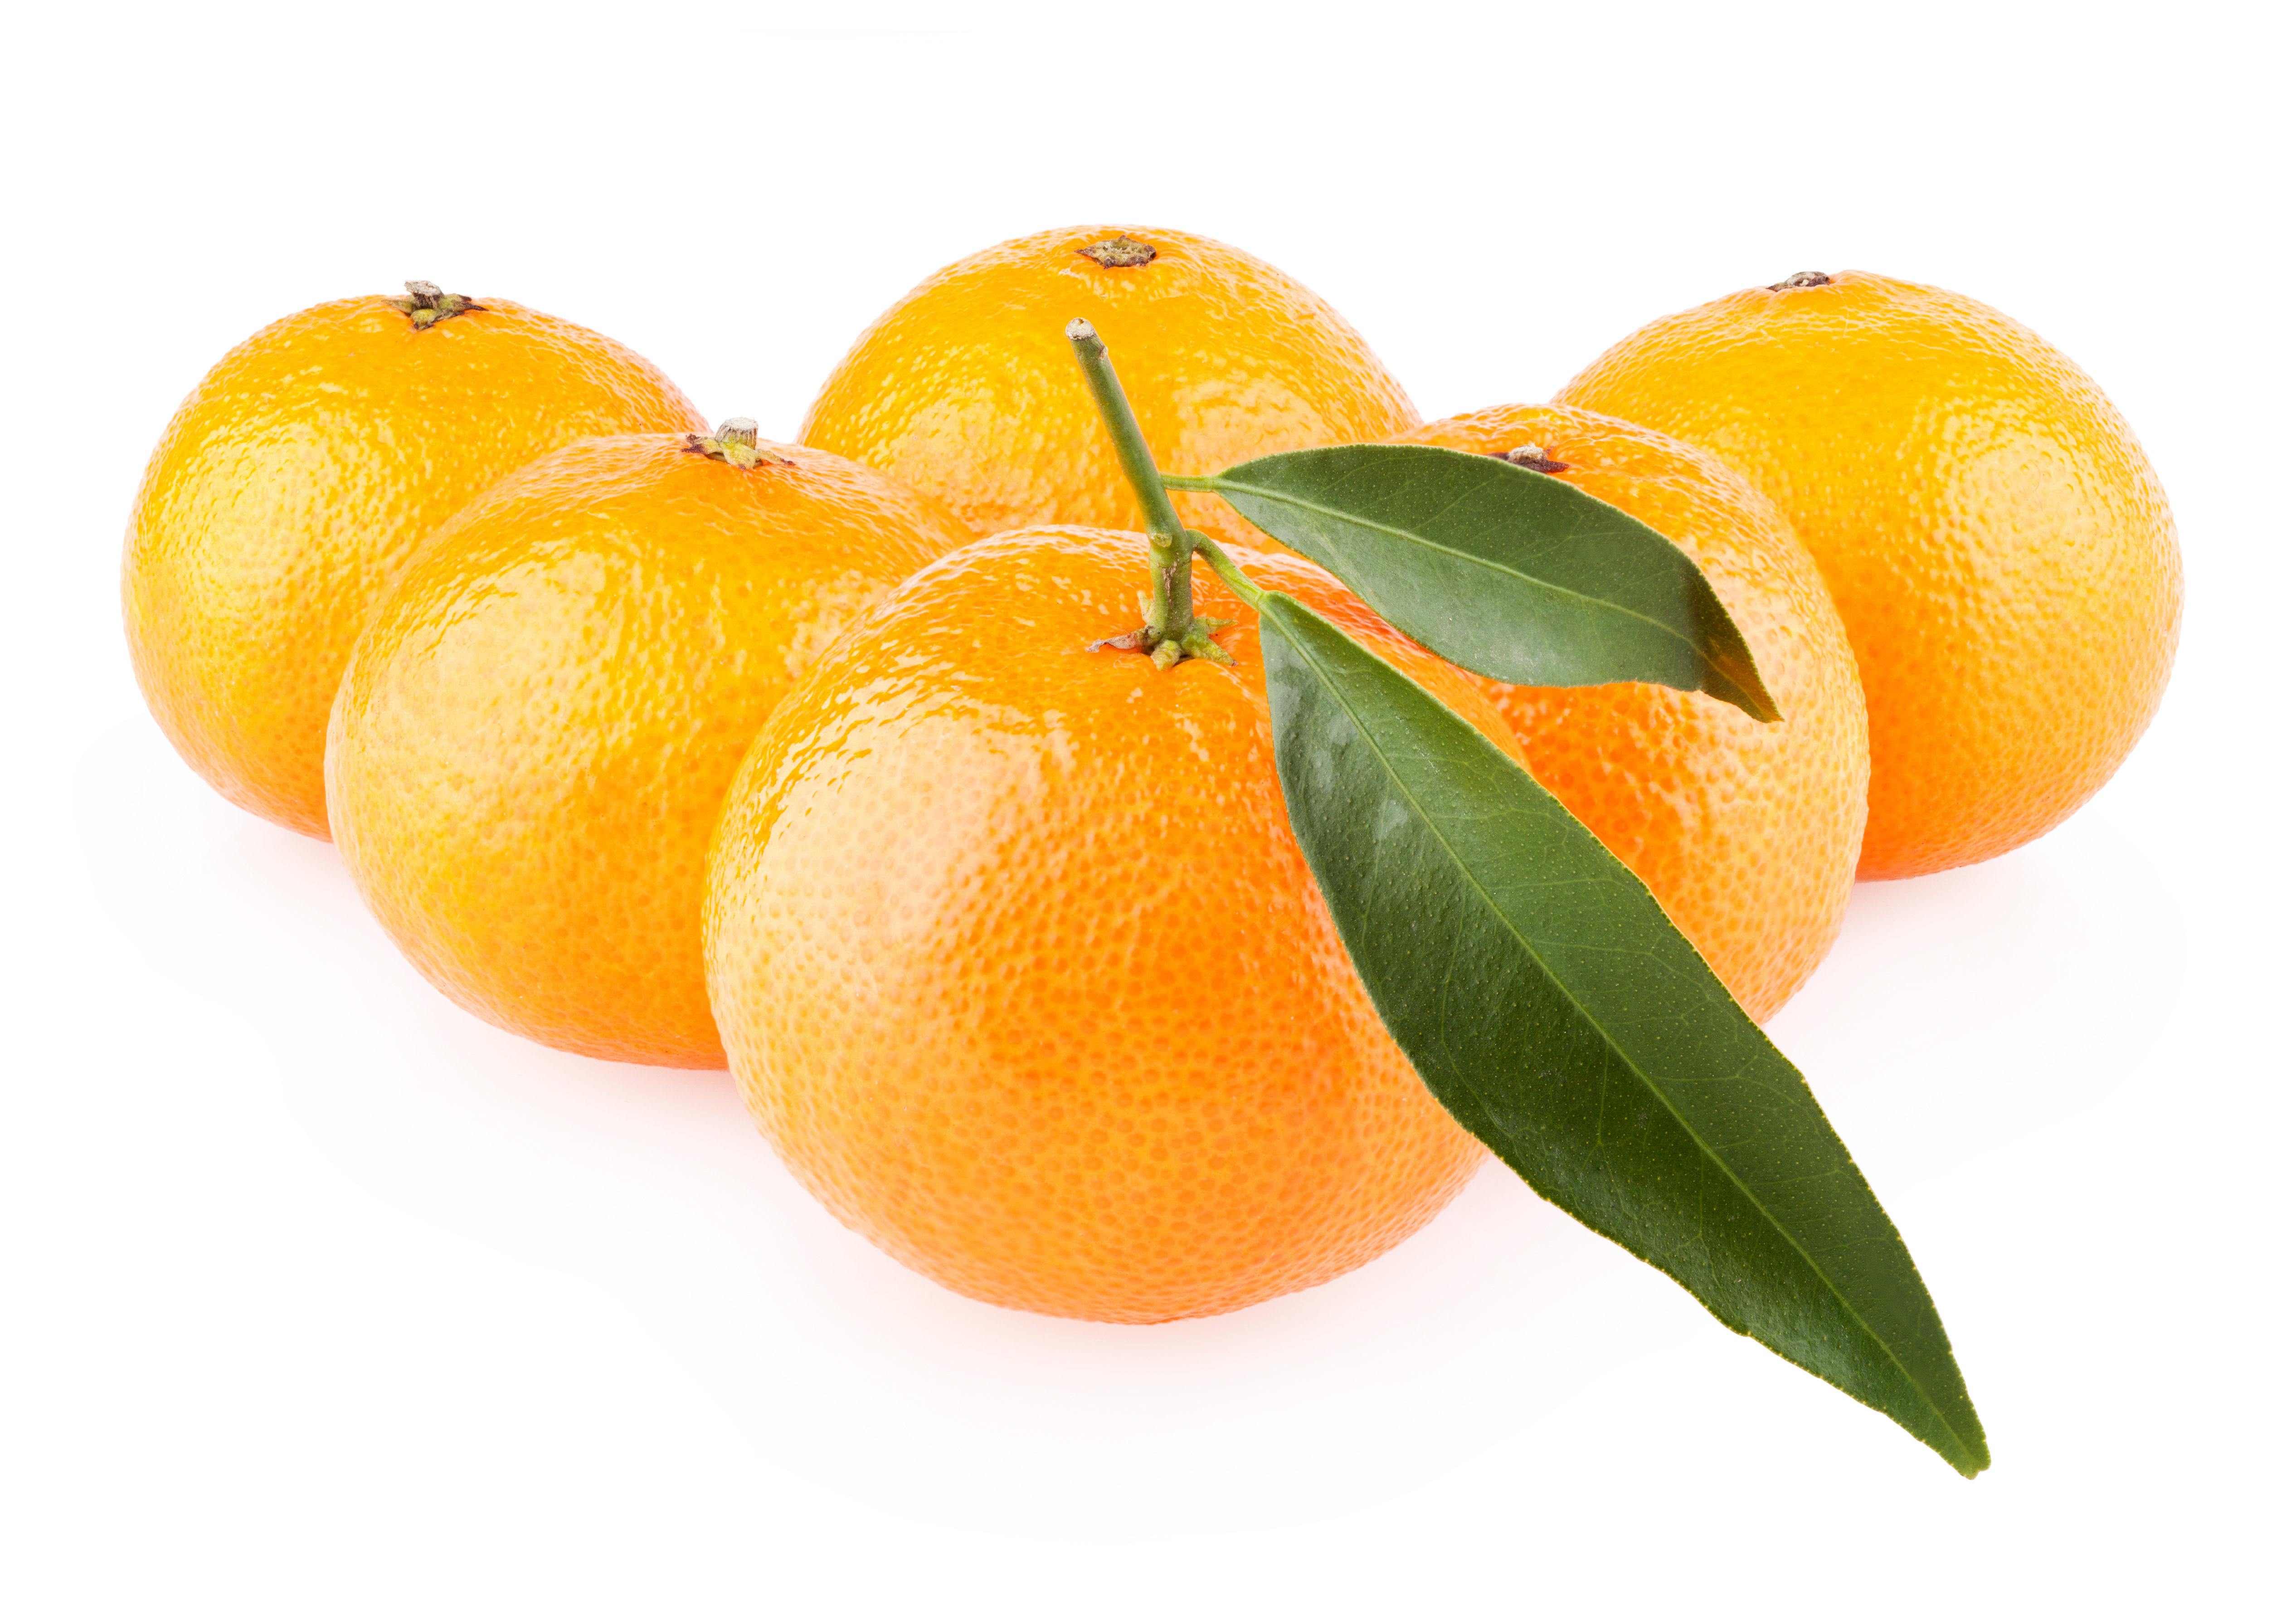 Ripe oranges photo